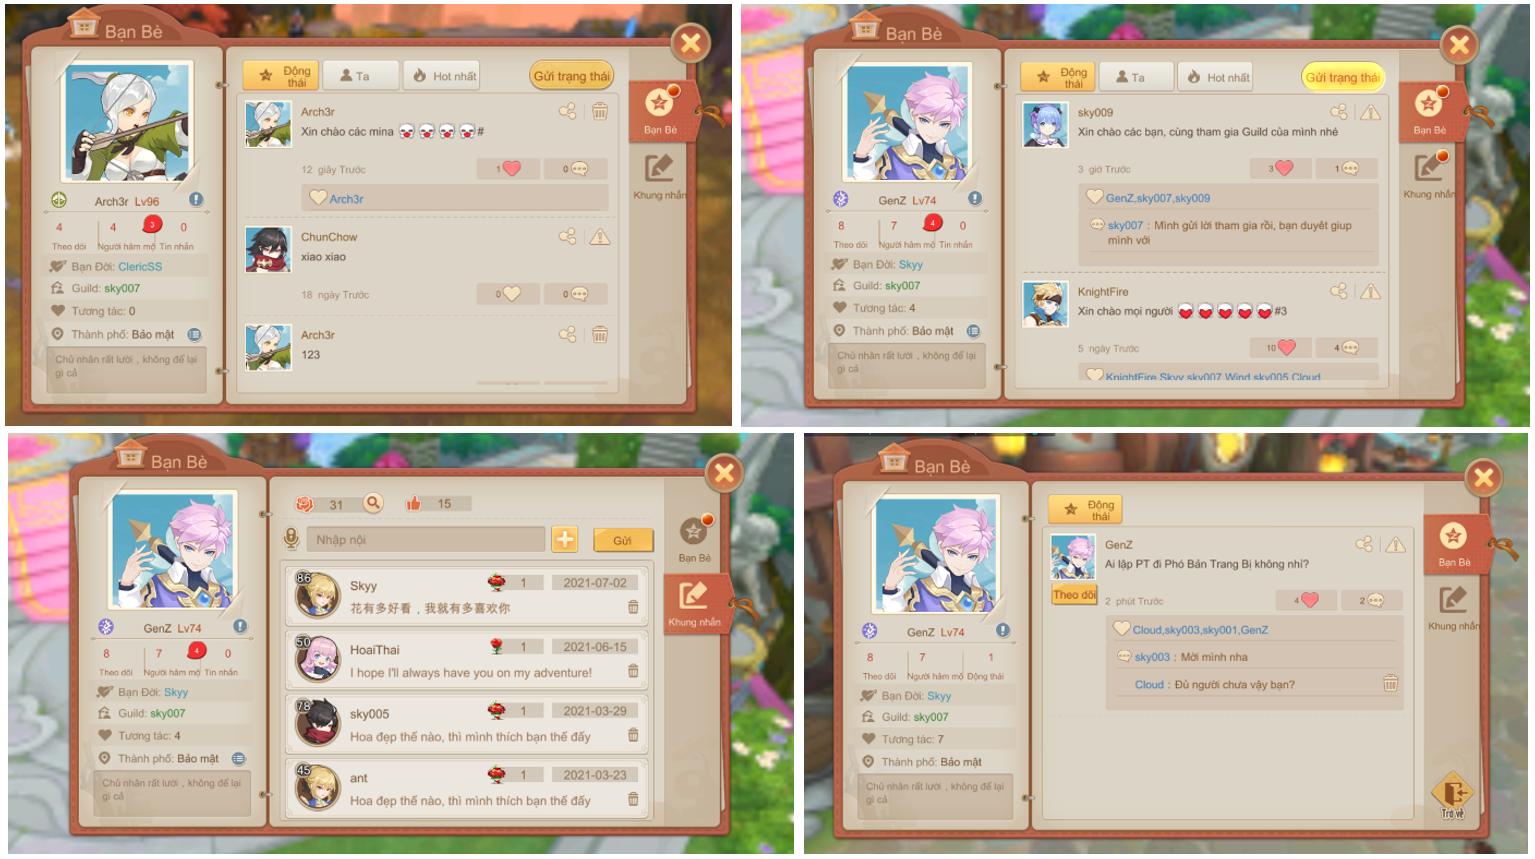 Cloud Song VNG: Cho phép người chơi mở trang cá nhân và tương tác ngay trong game